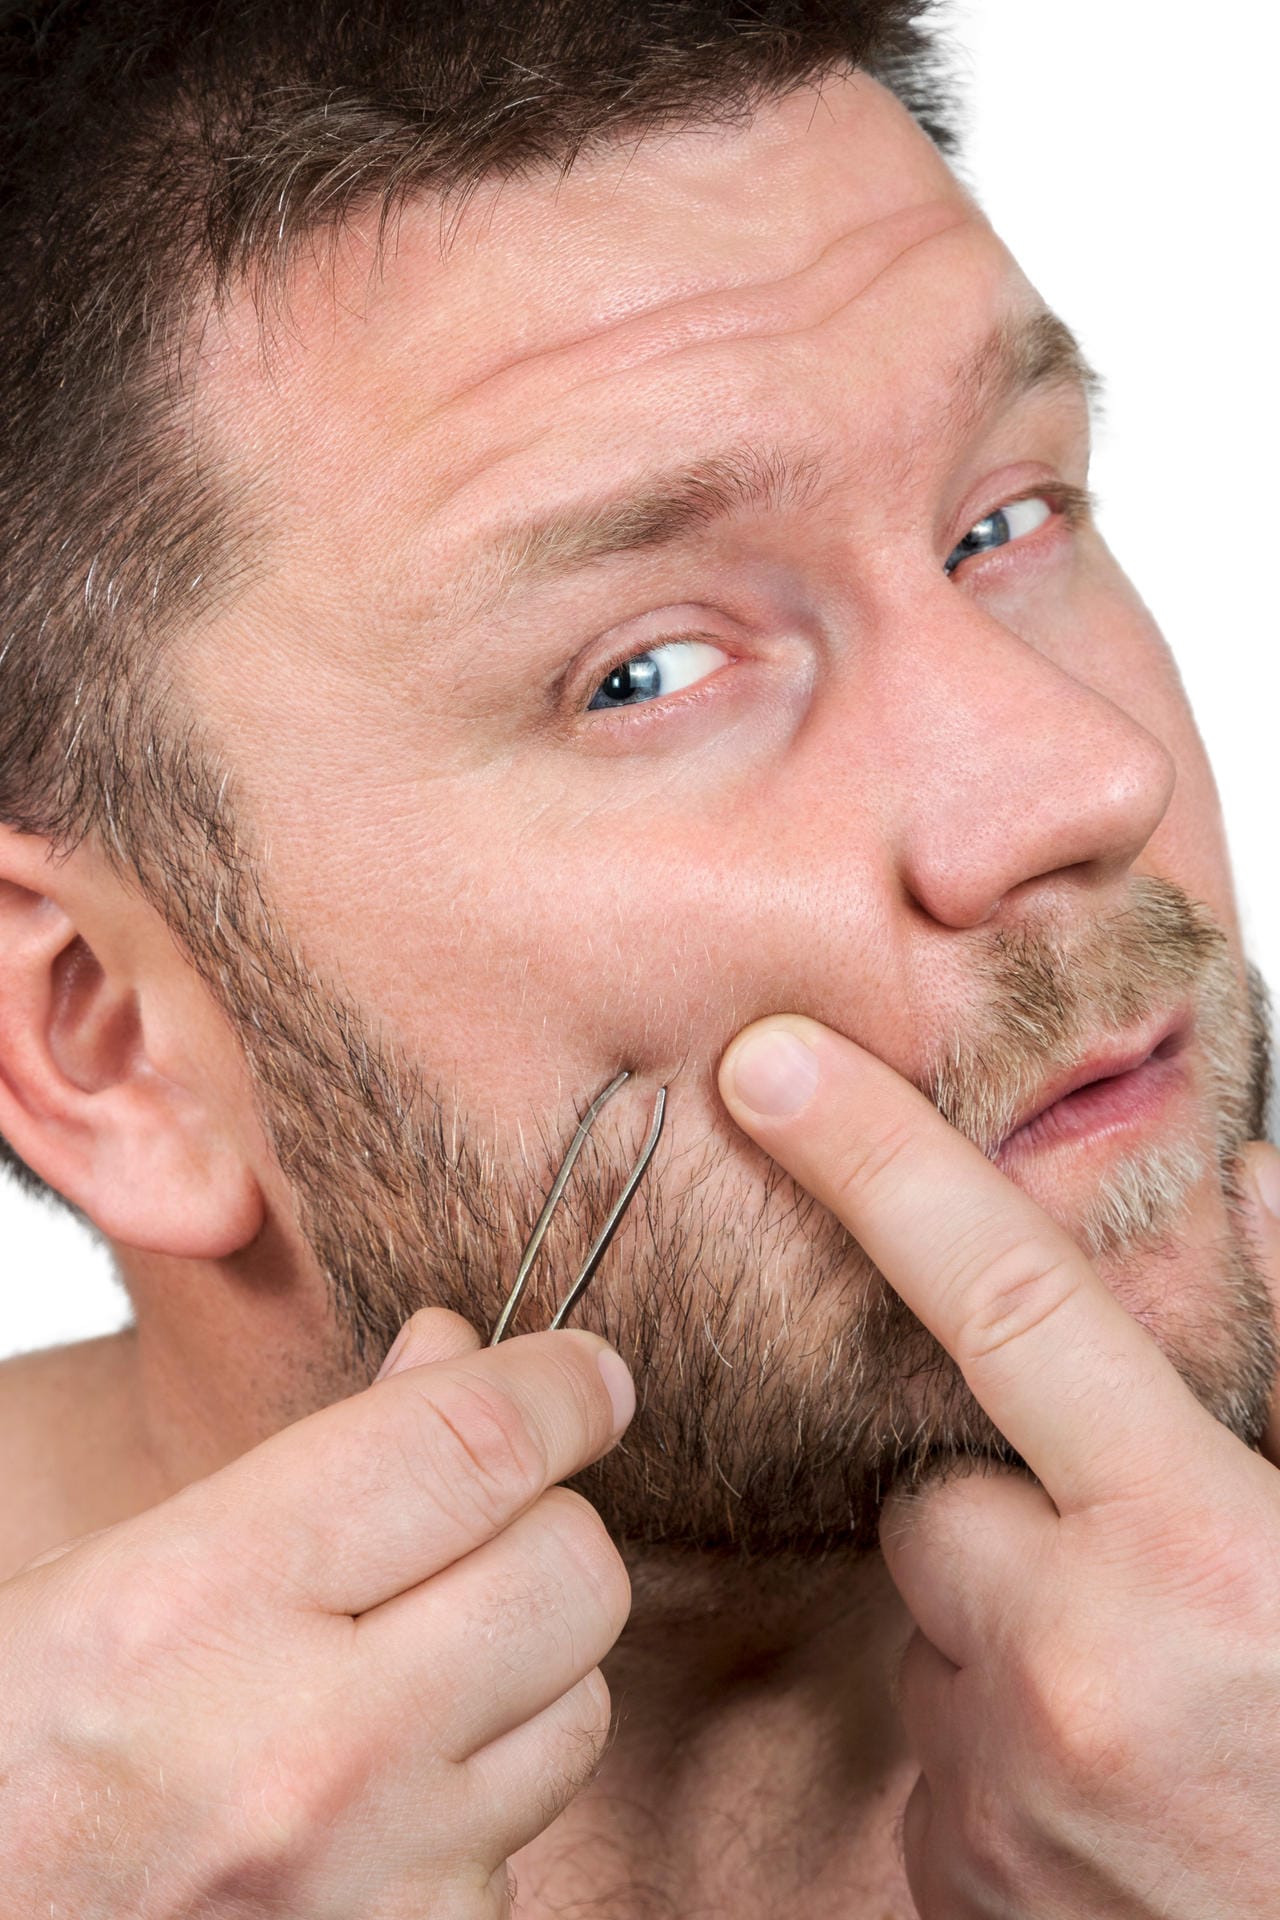 Zum entfernen des eingewachsenen Haars nutzen Sie nur eine desinfizierte Nadel oder Pinzette. Oder fragen Sie den Kosmetiker Ihres Vertrauens.